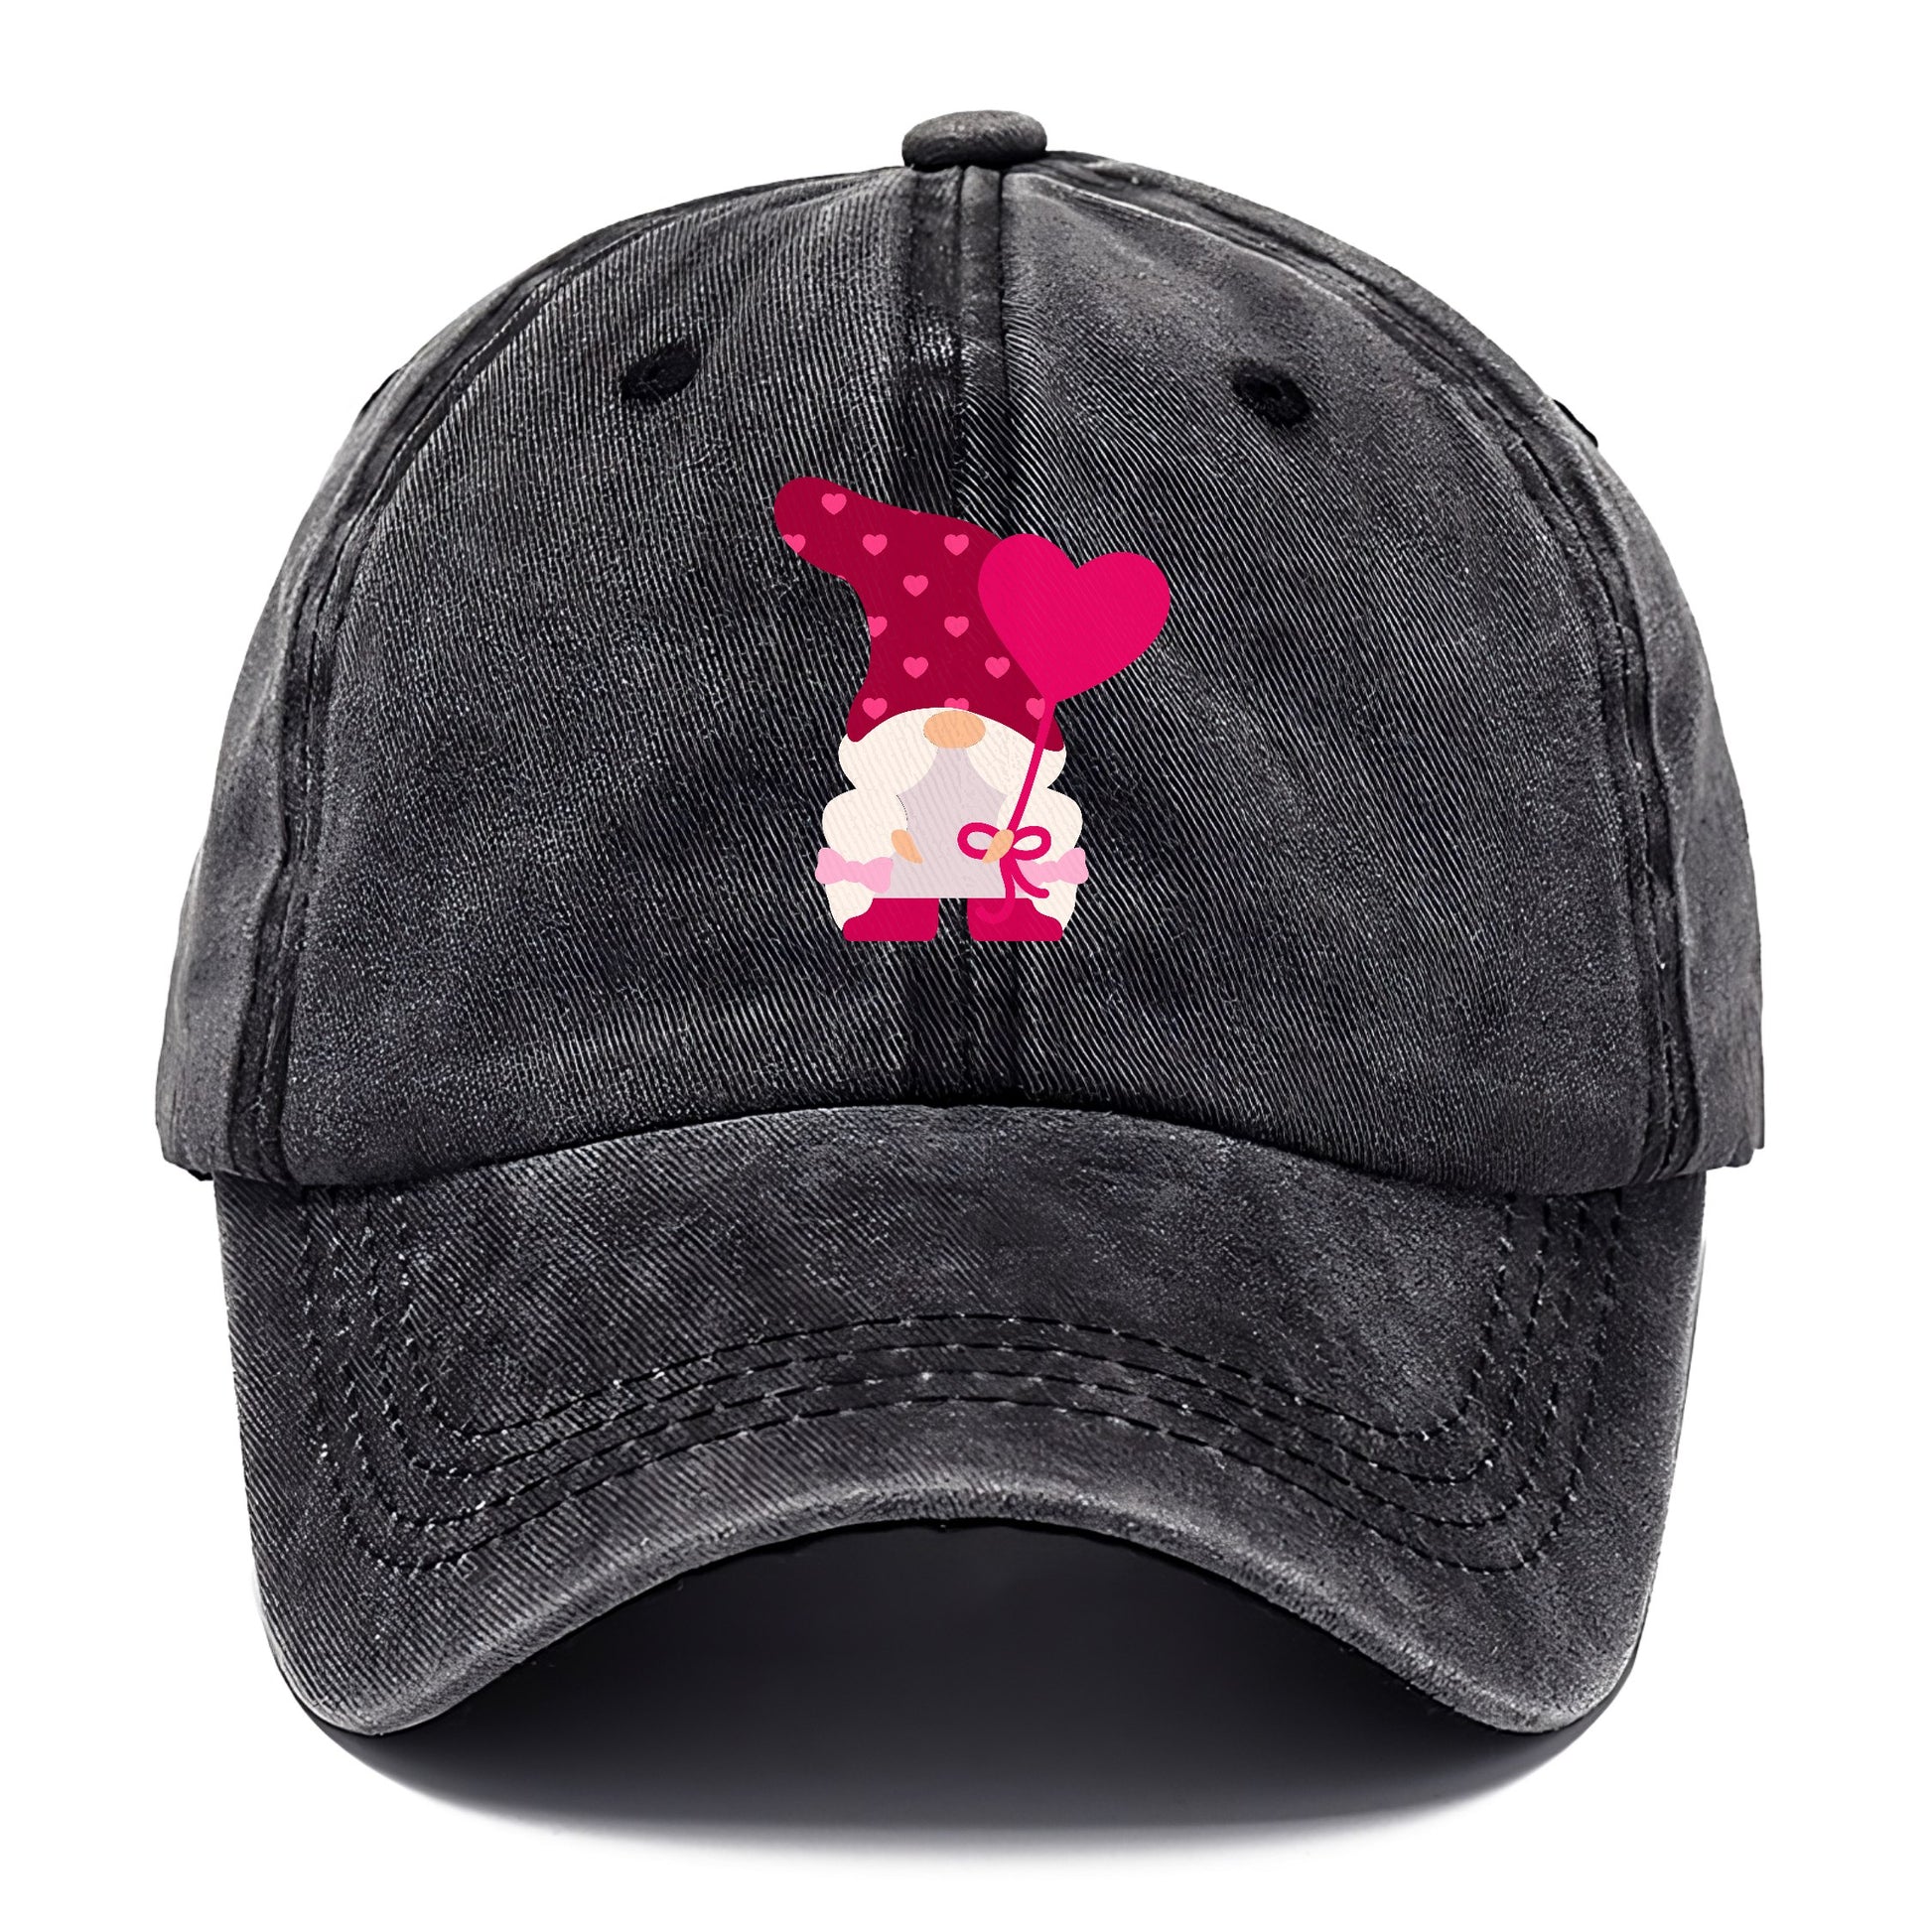 Valentine's dwarf 2 Hat